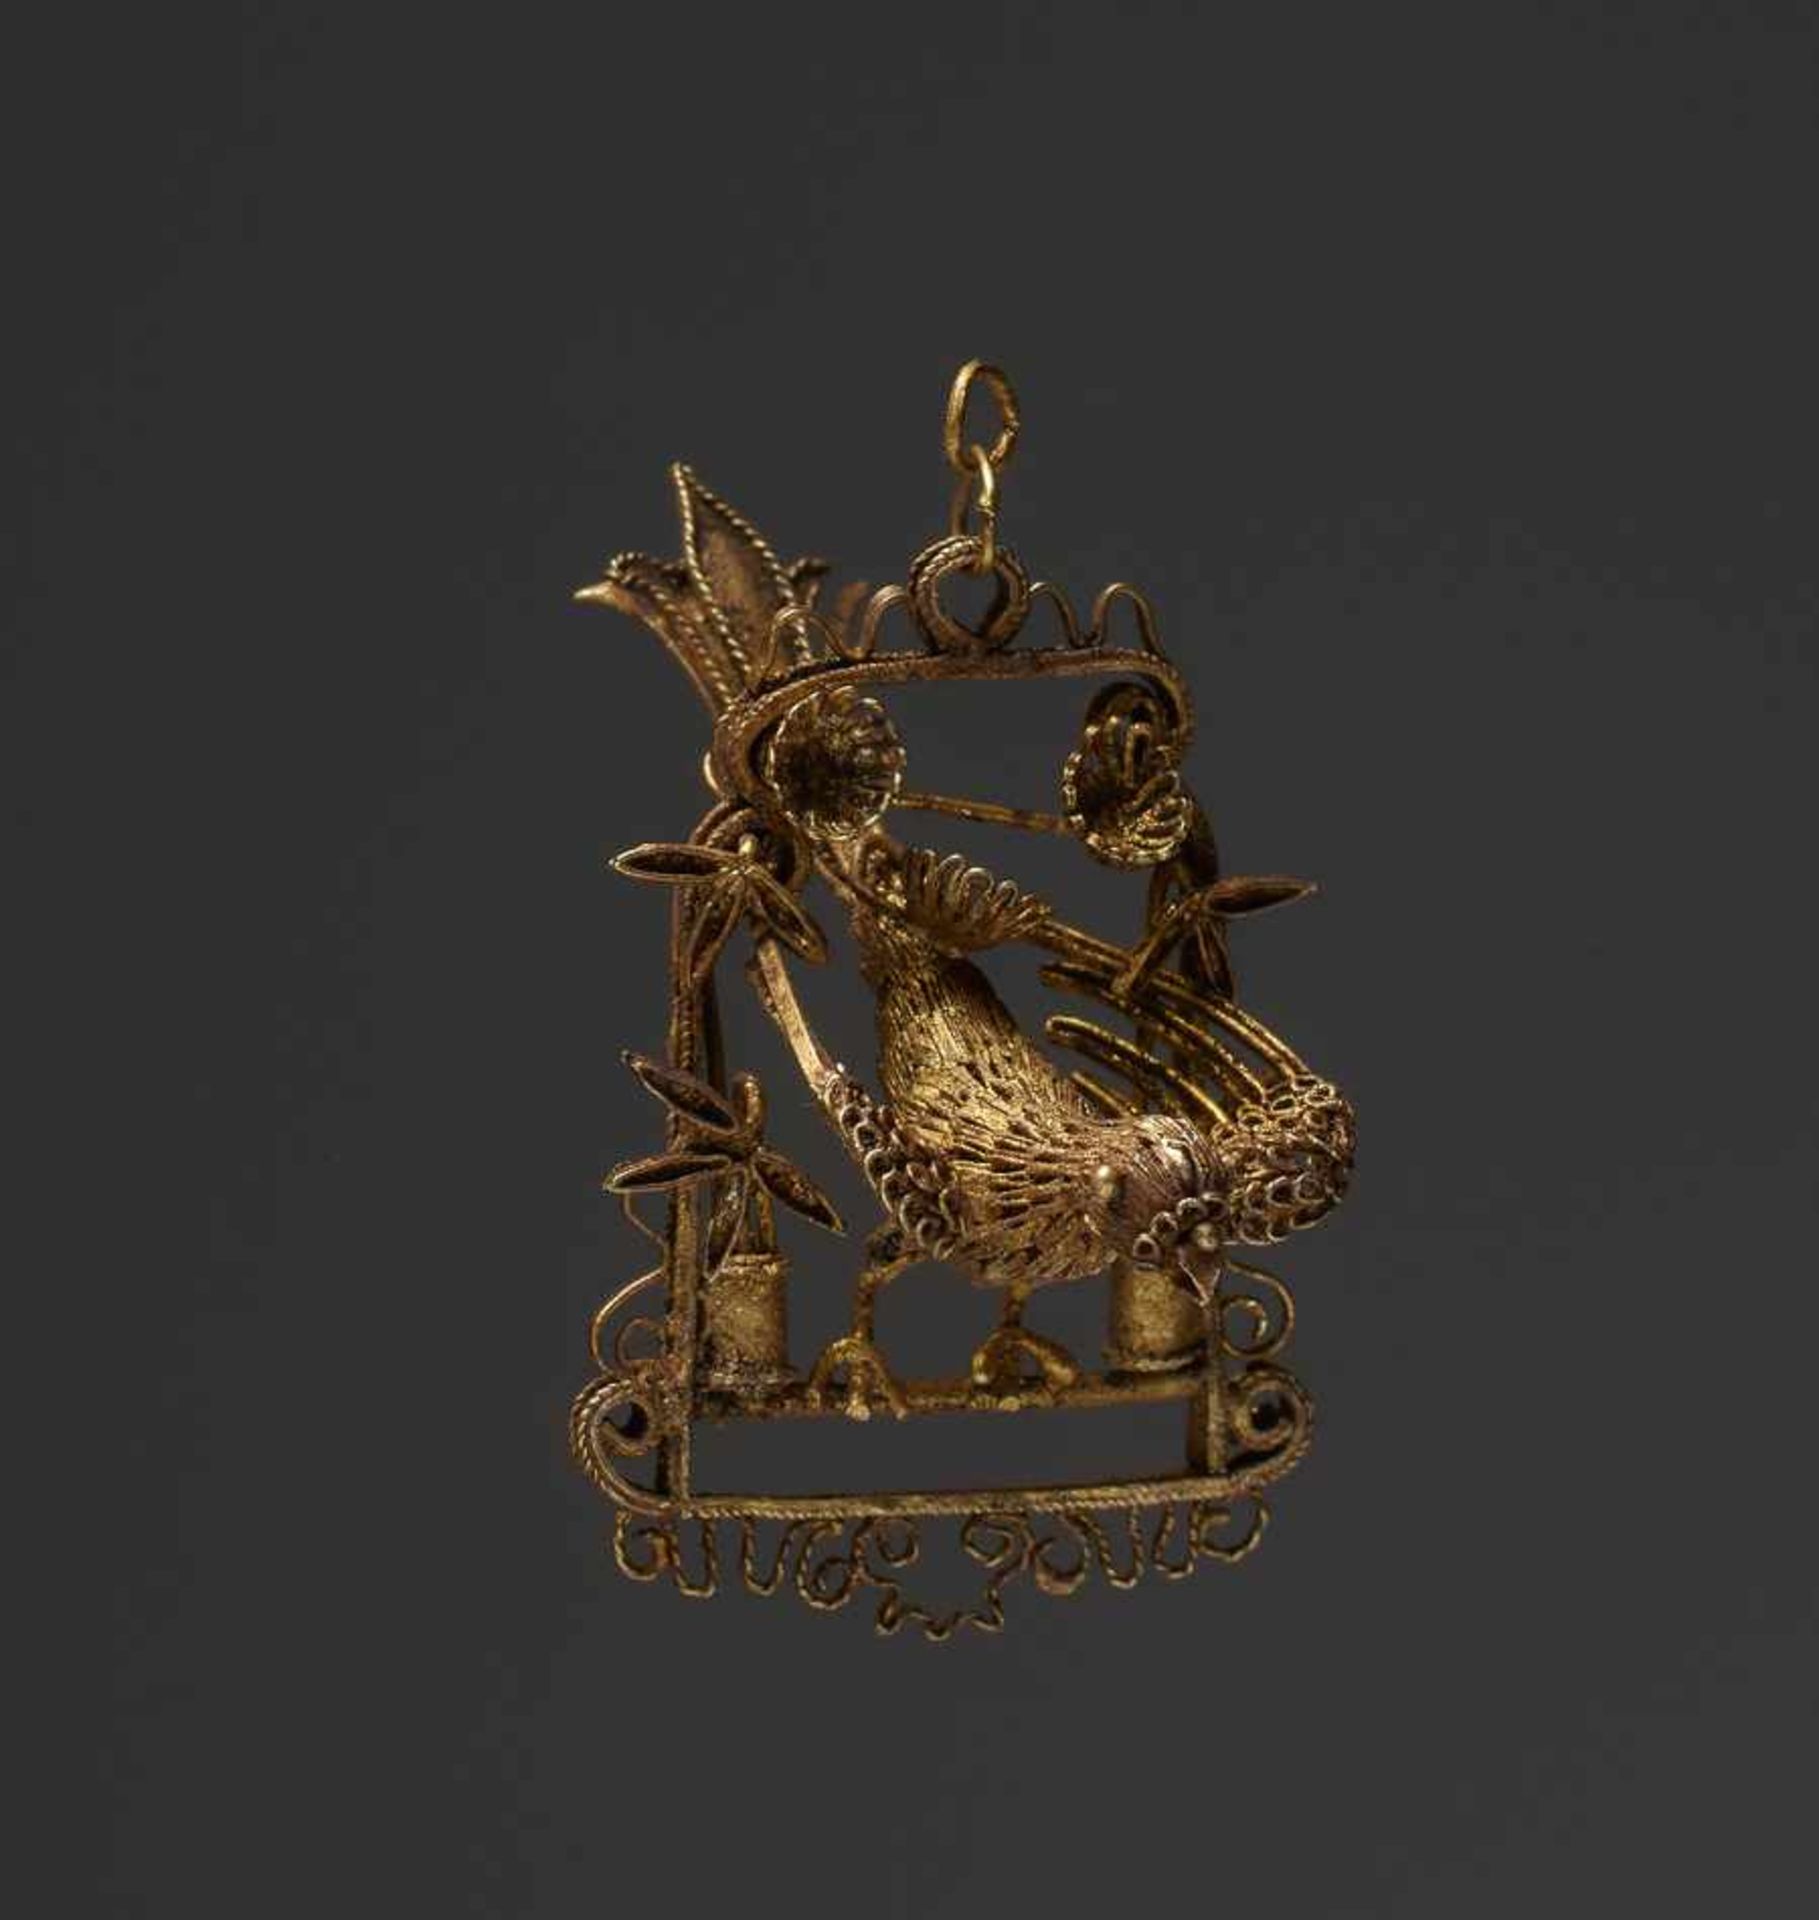 PHÖNIX AUF STANGE Gold, China. Qing (1644 – 1911), möglicherweise älterRein theoretisch könnte es